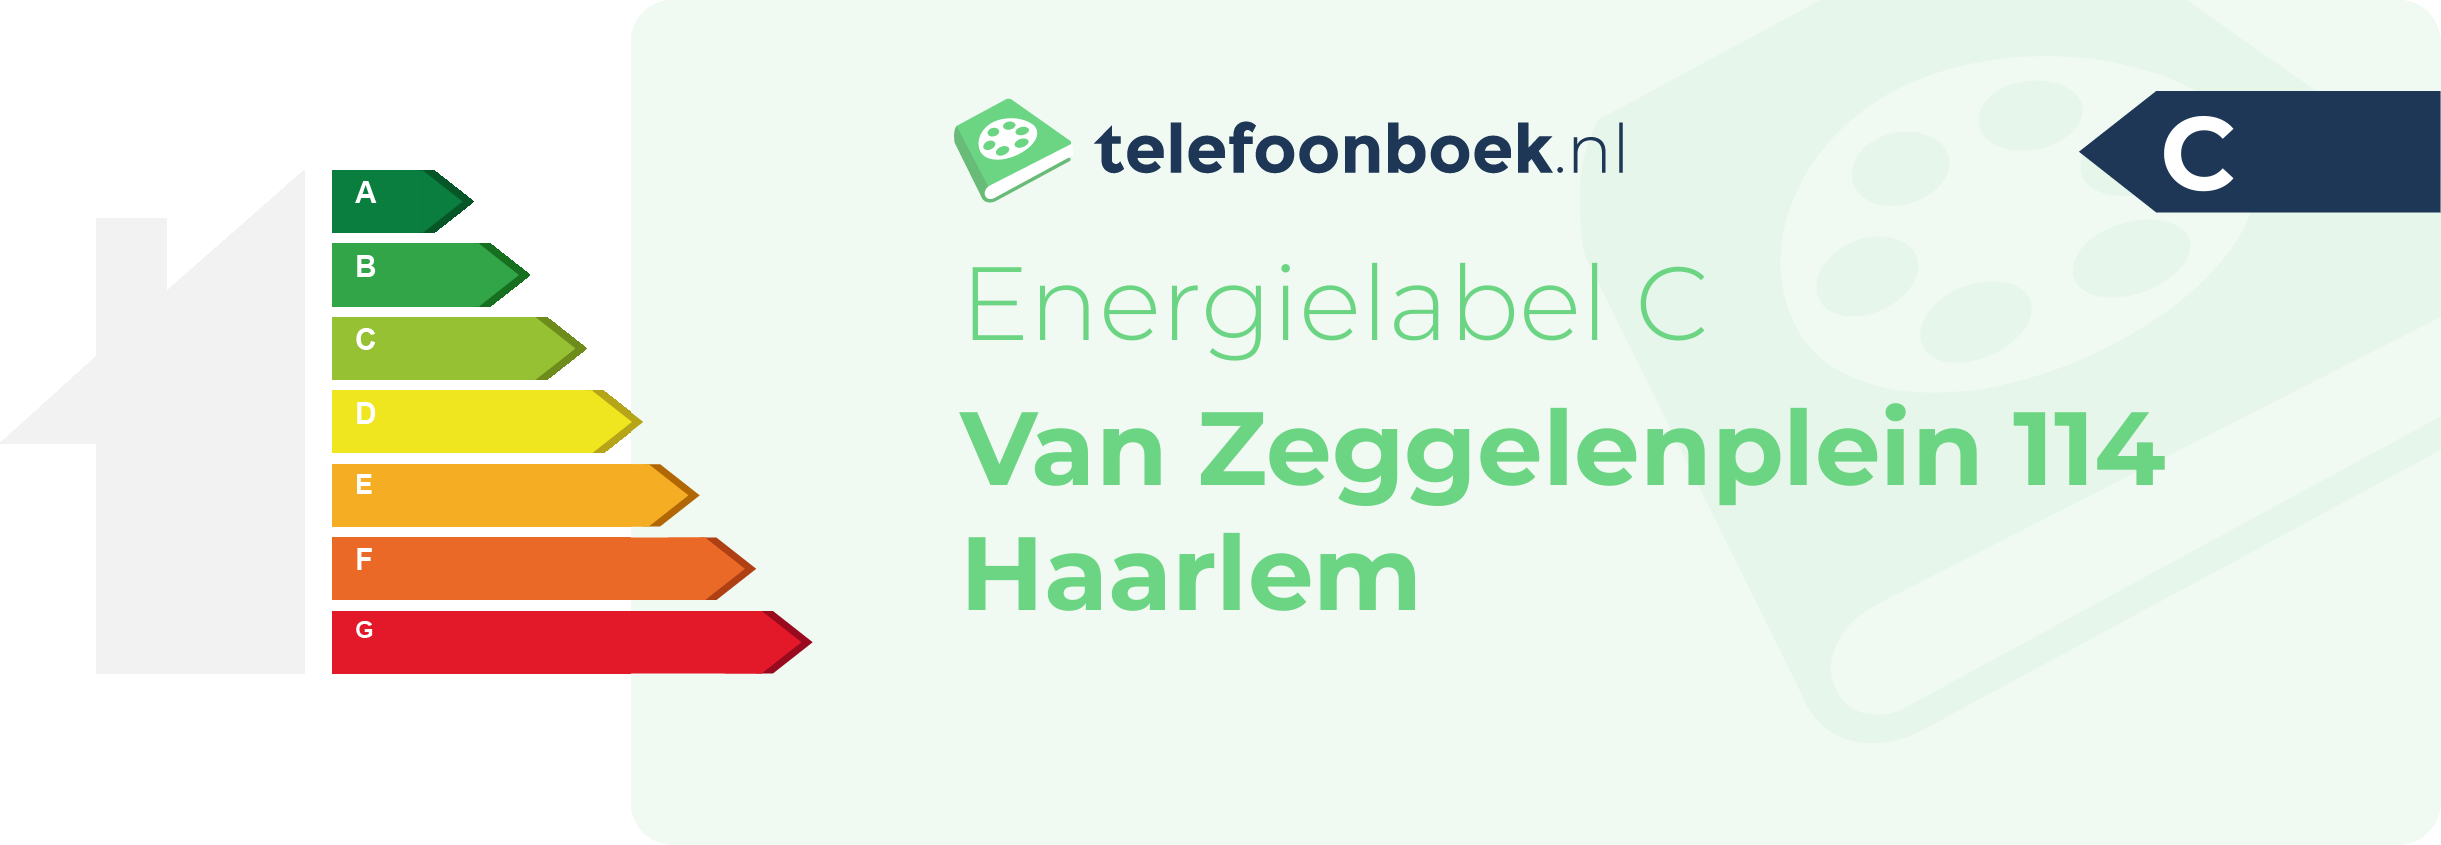 Energielabel Van Zeggelenplein 114 Haarlem